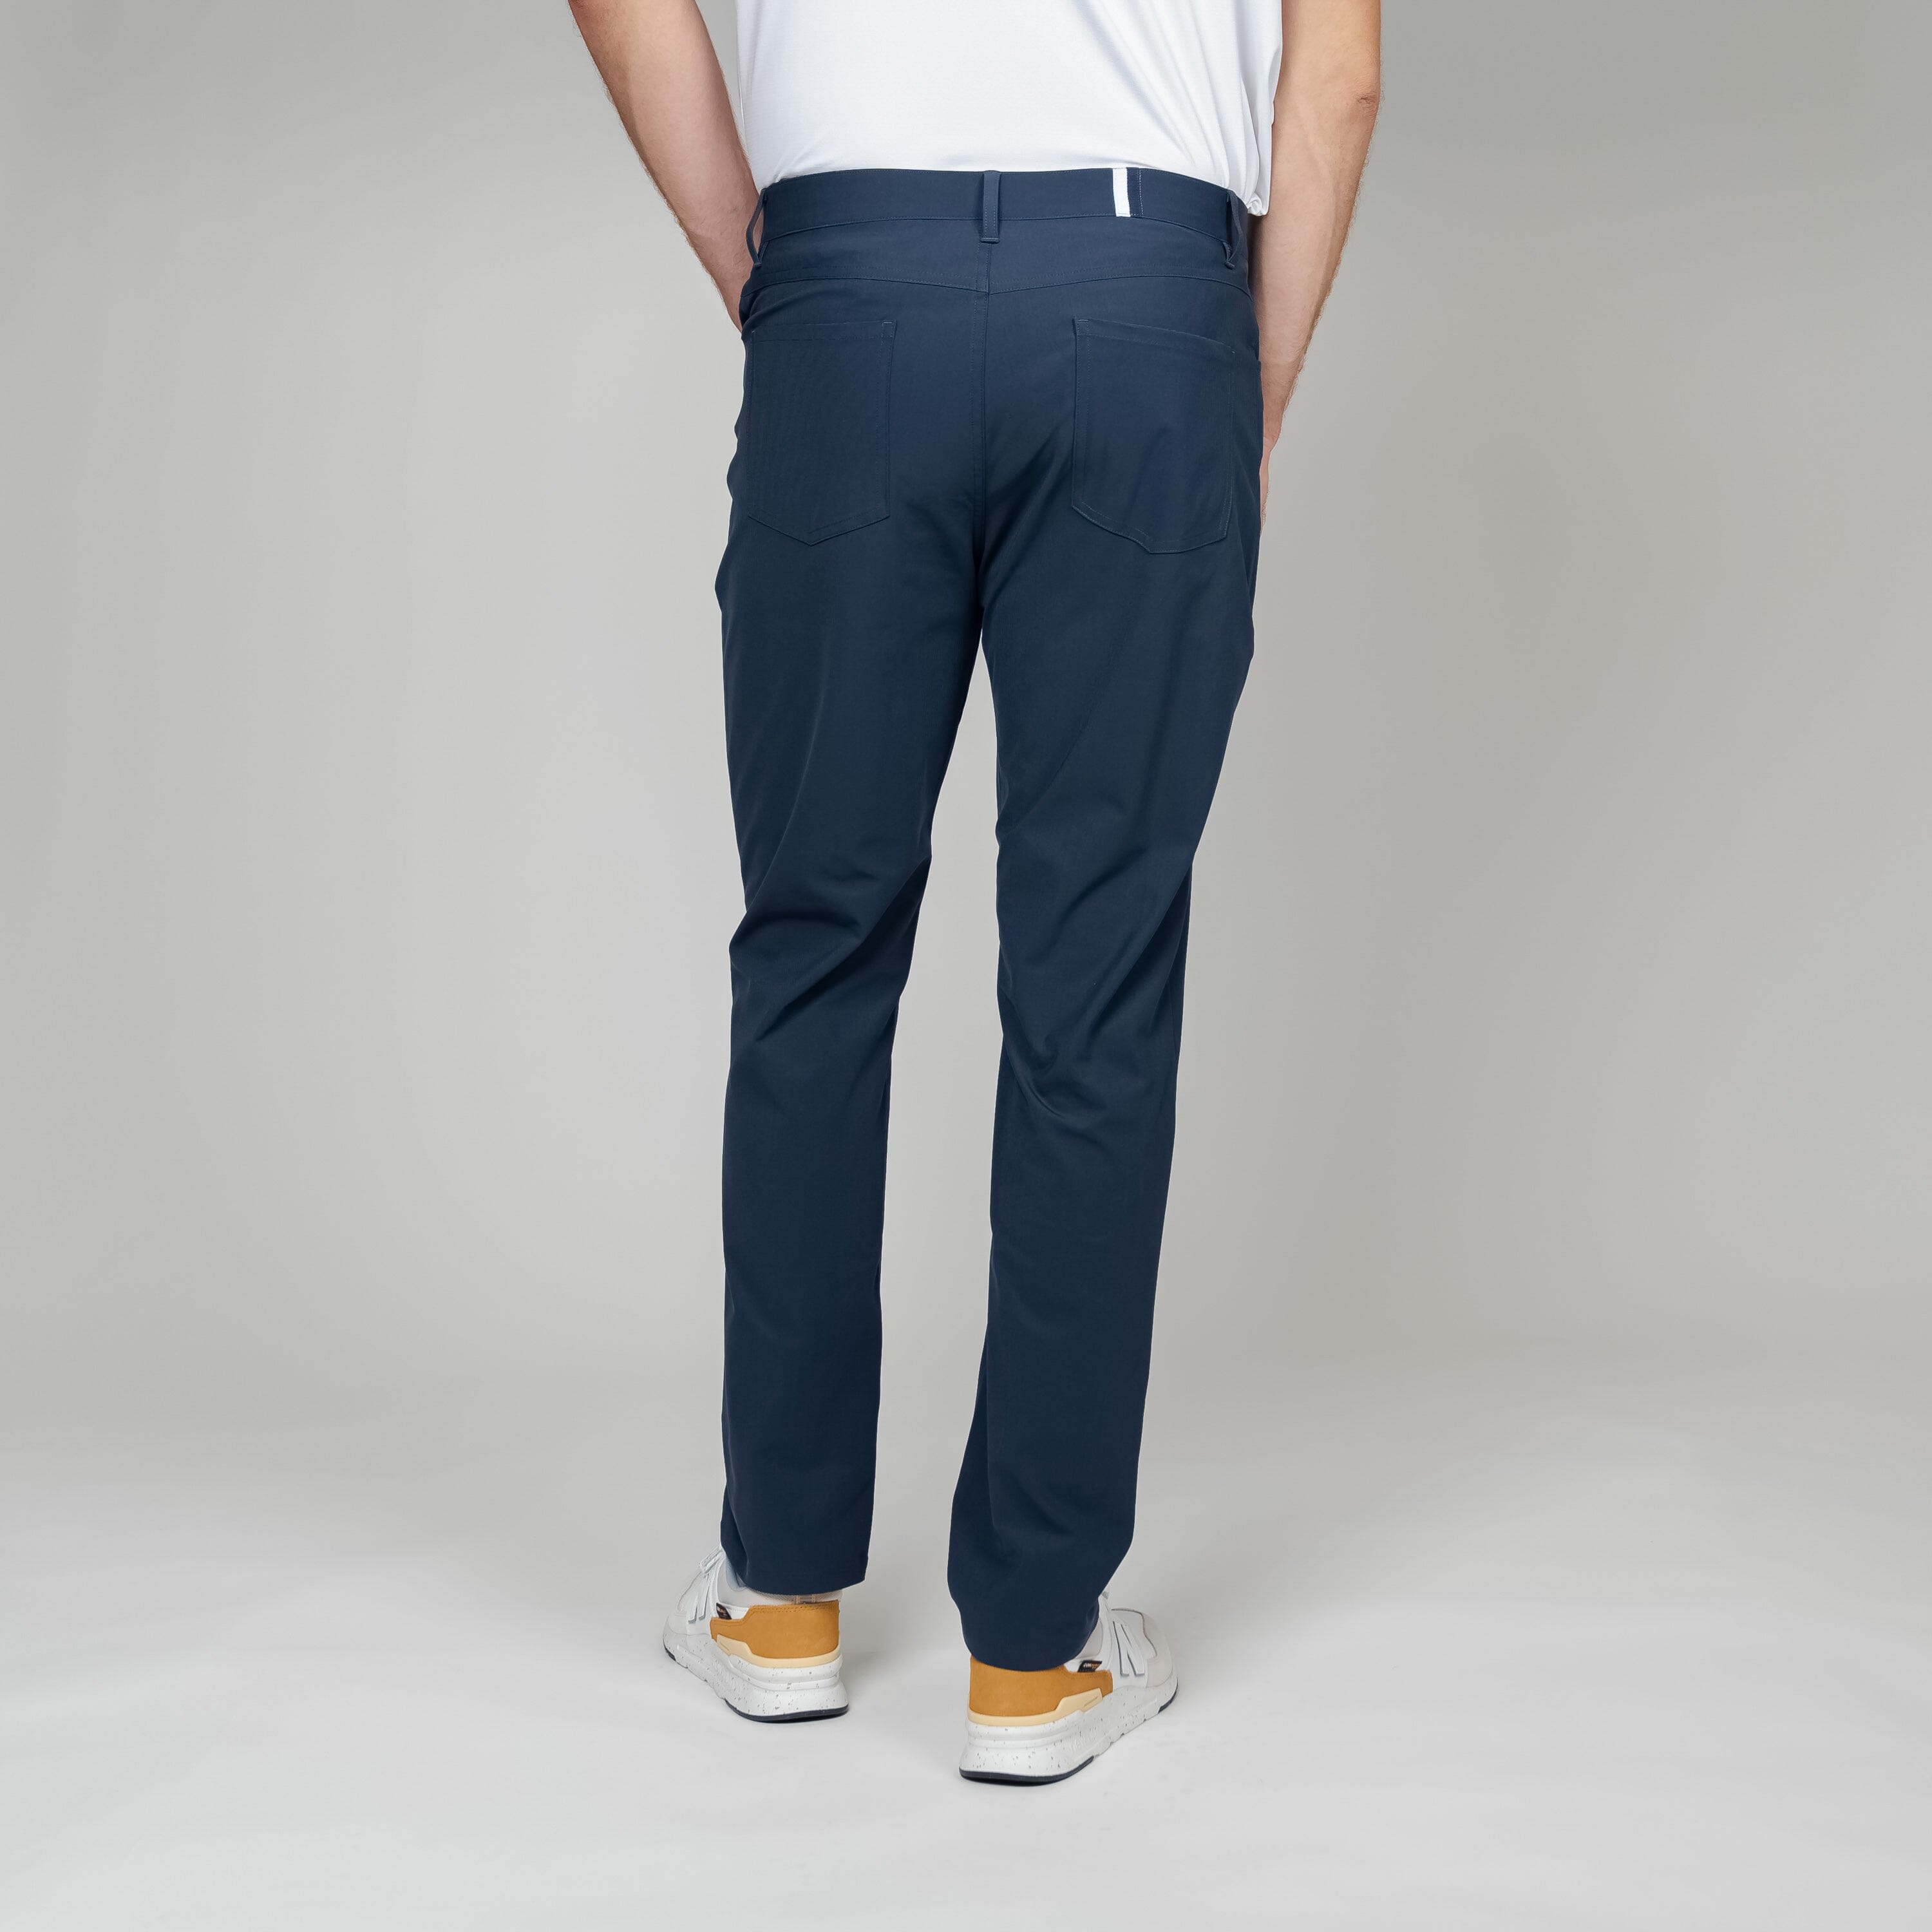 Buy Delong SVTROU025 Men's Regular Fit Anchor Length Trouser, Off White -  30 at Amazon.in